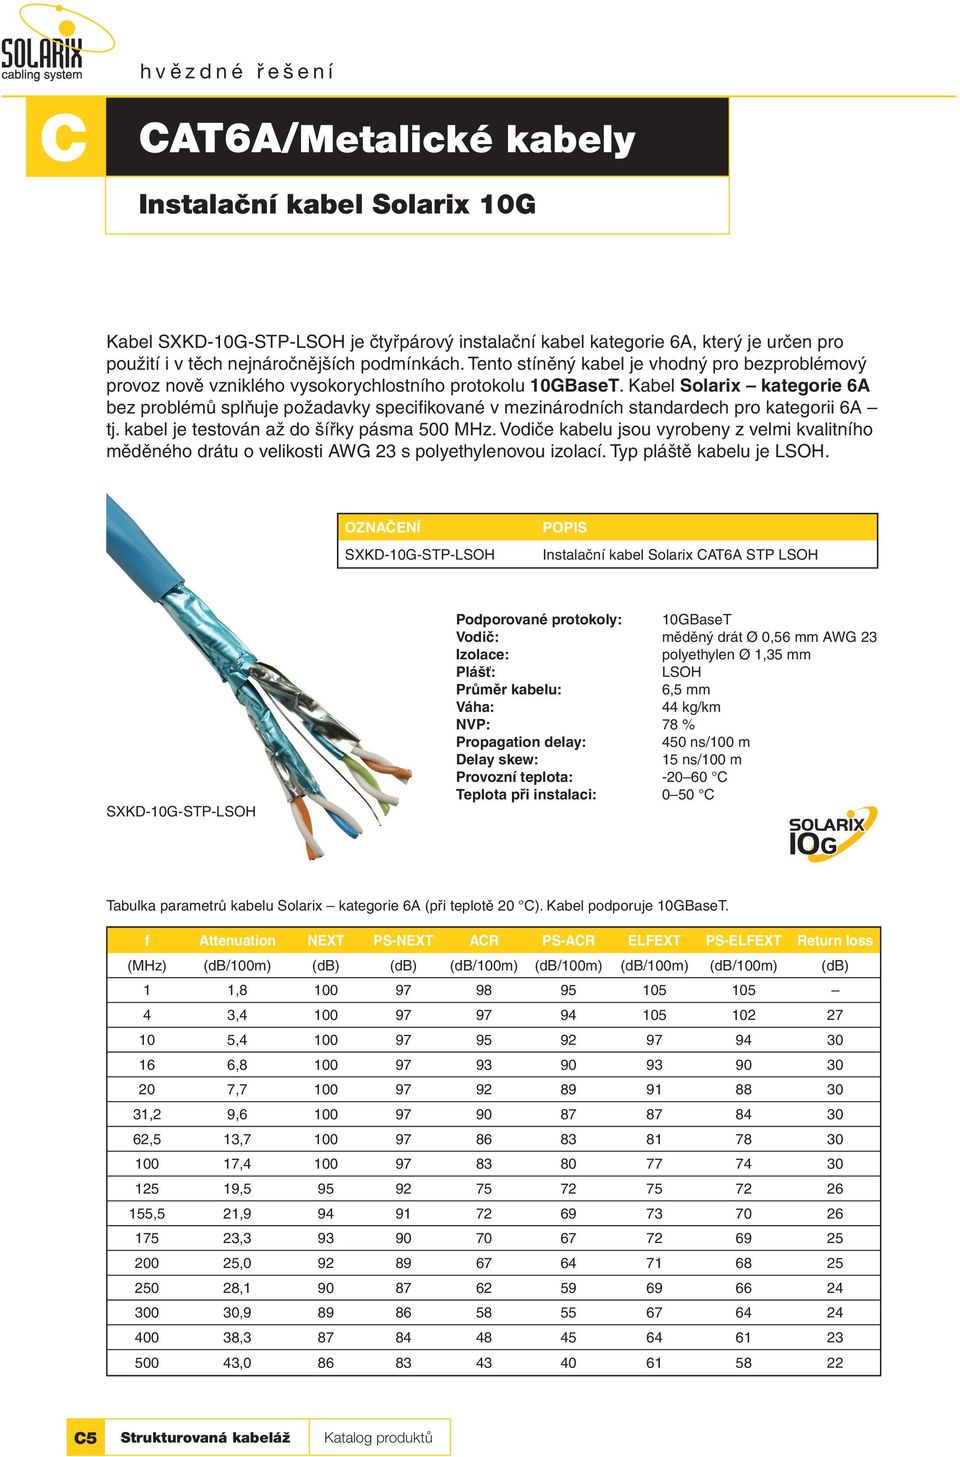 Kabel Solarix kategorie 6A bez problémů splňuje požadavky specifikované v mezinárodních standardech pro kategorii 6A tj. kabel je testován až do šířky pásma 500 MHz.